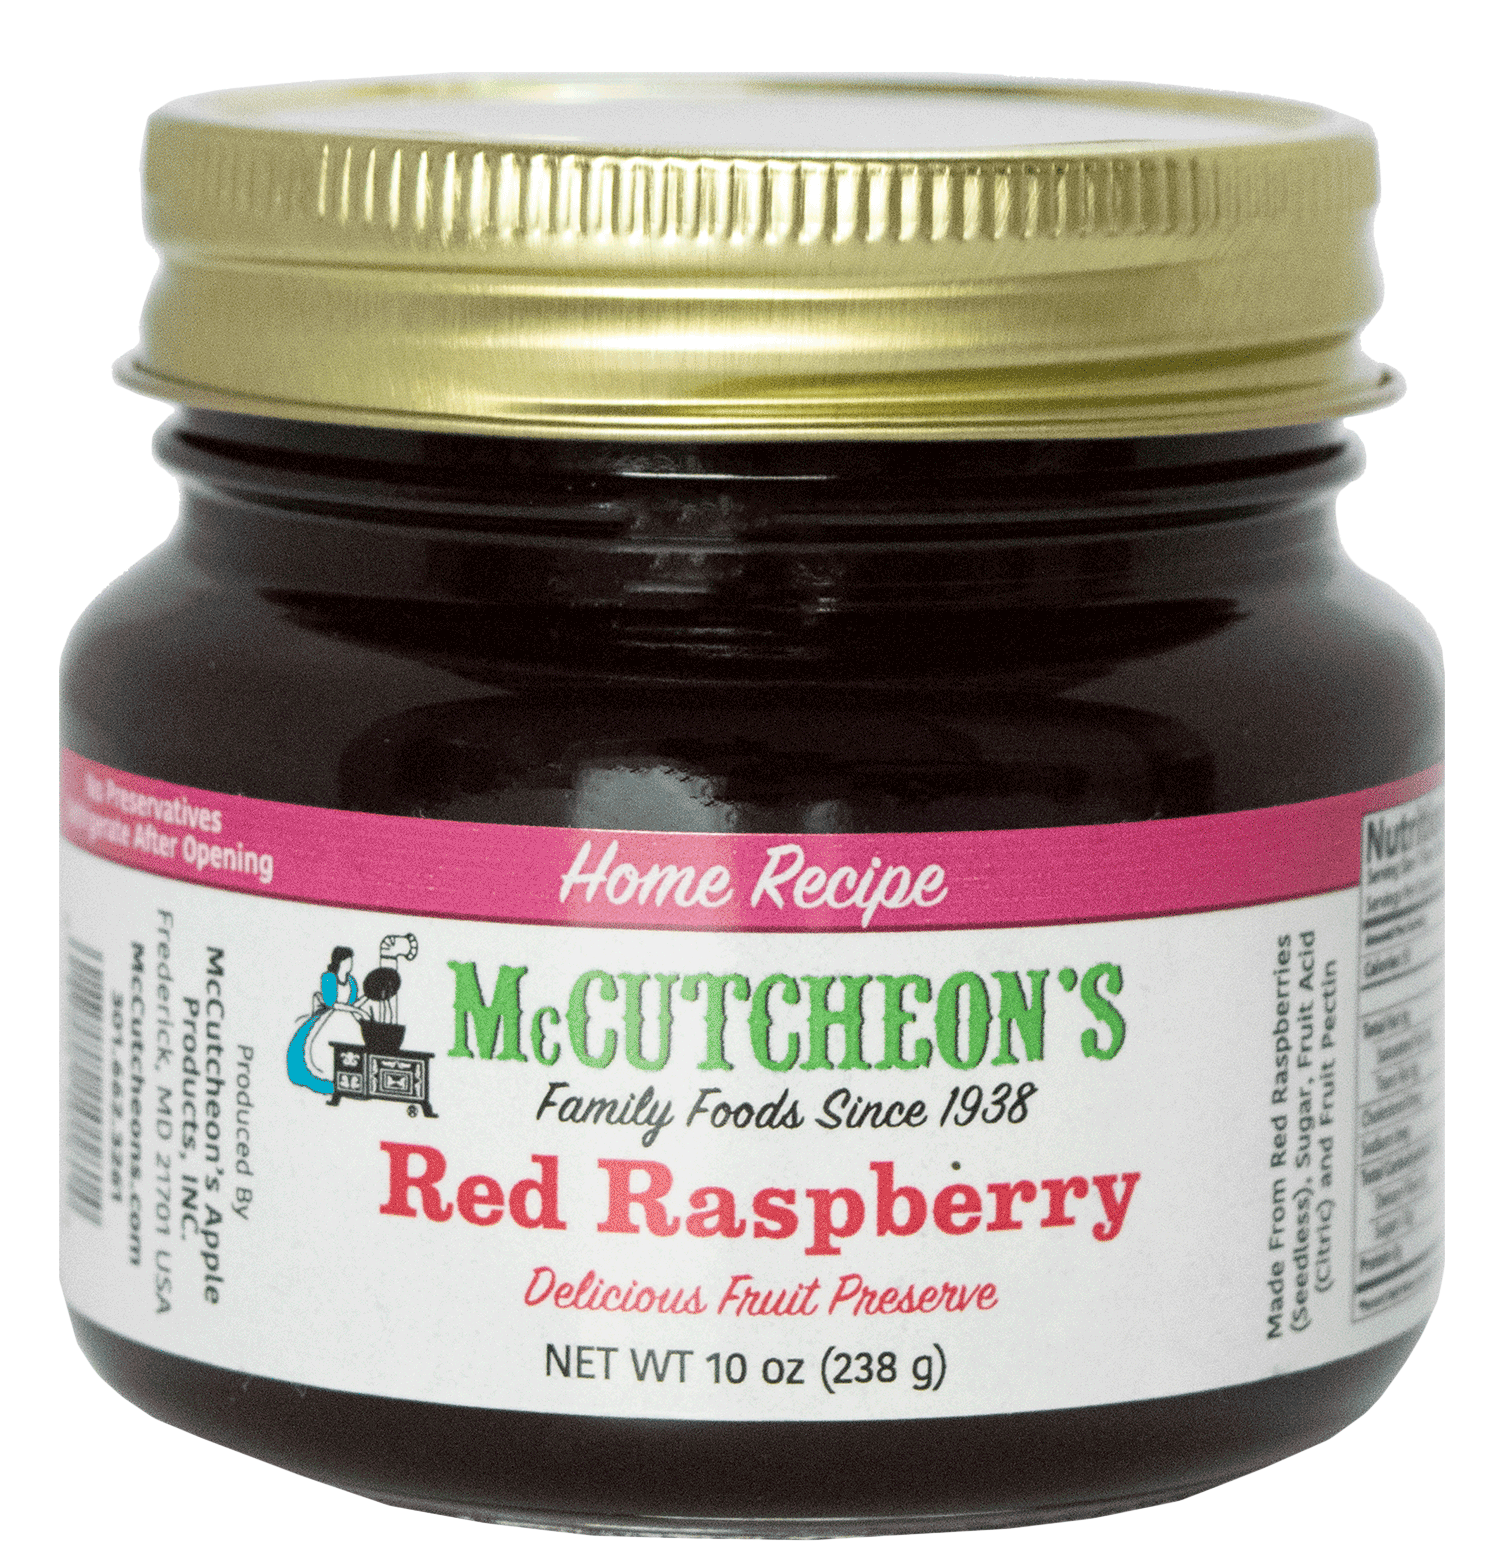 jar of McCutcheon's mini red raspberry preserves